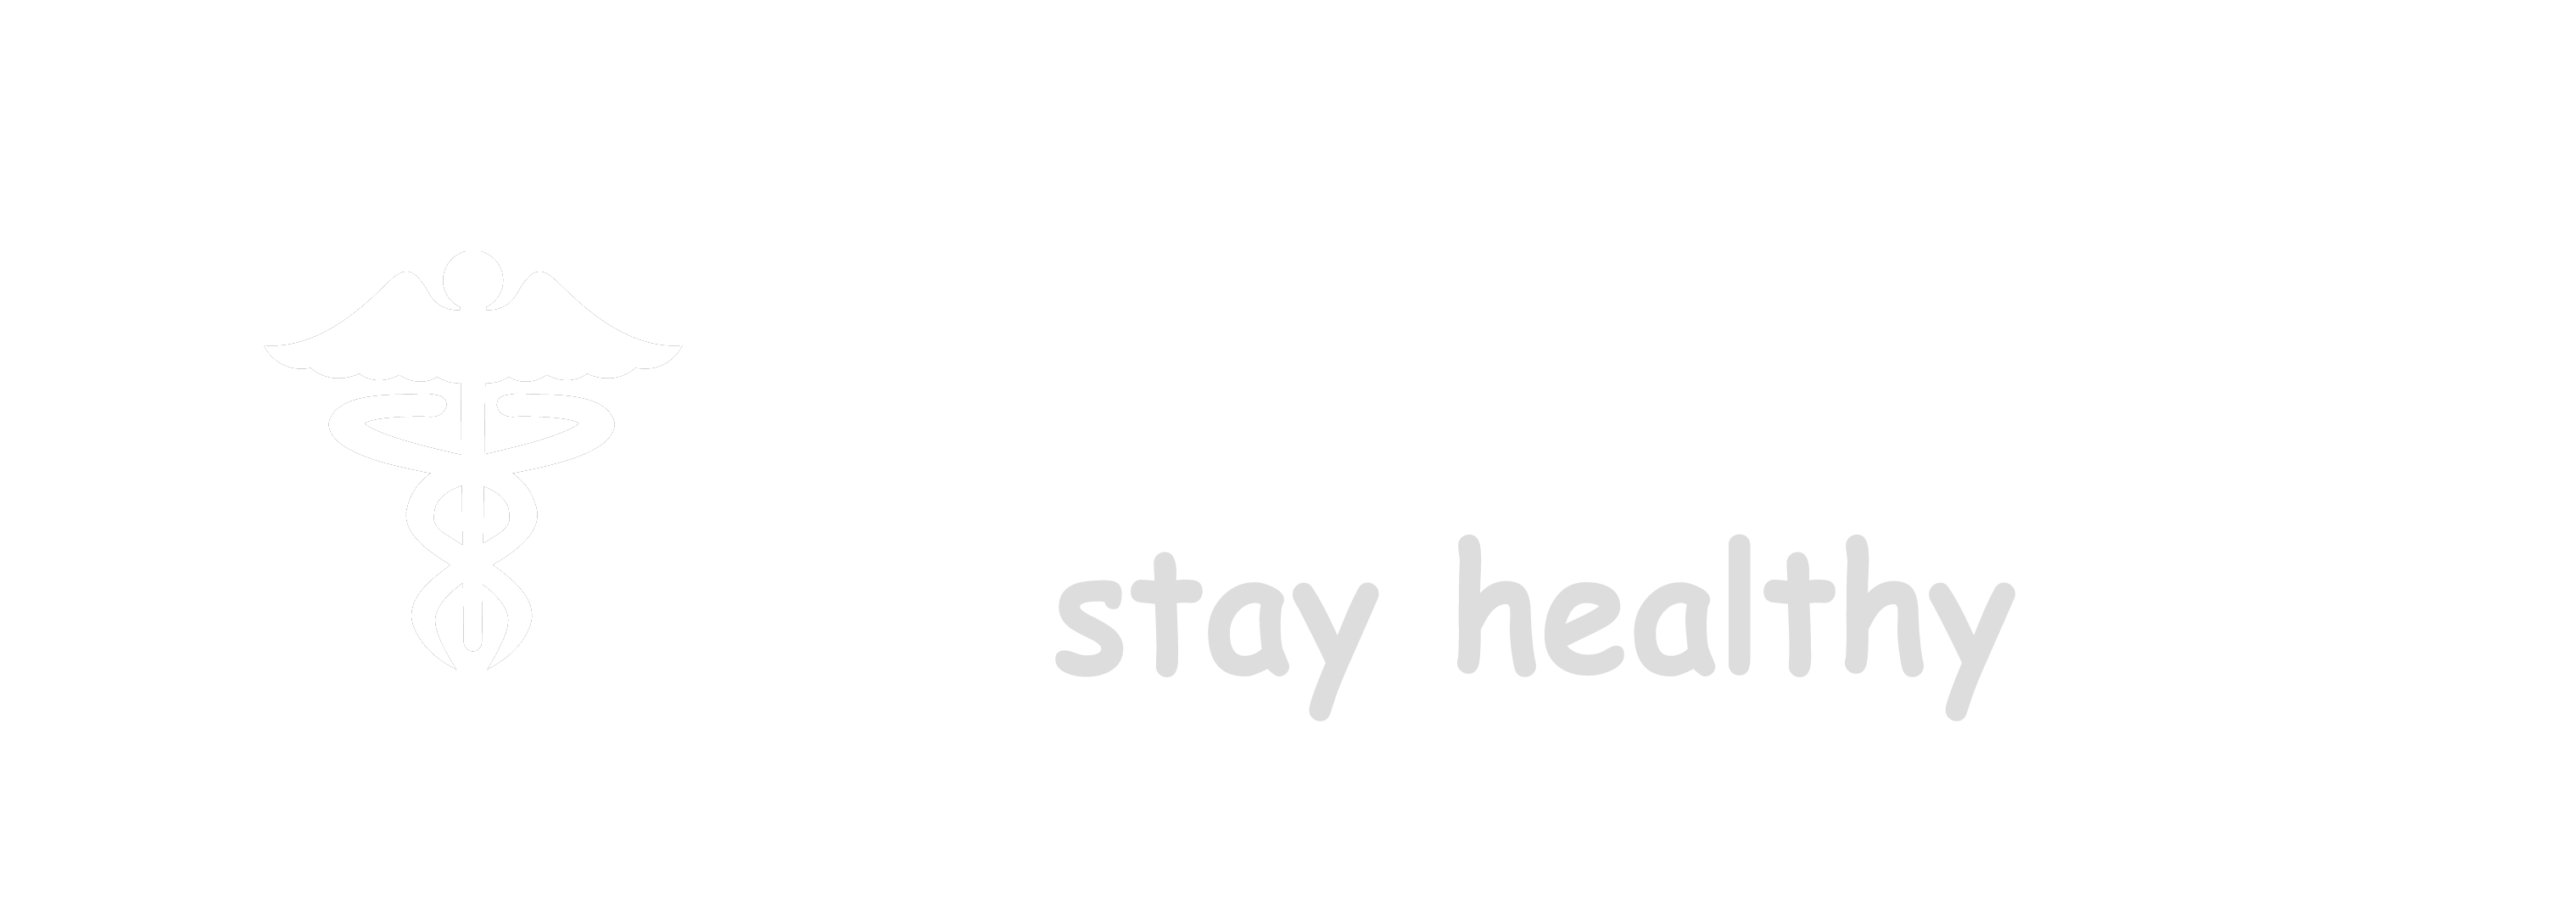 Health Upp